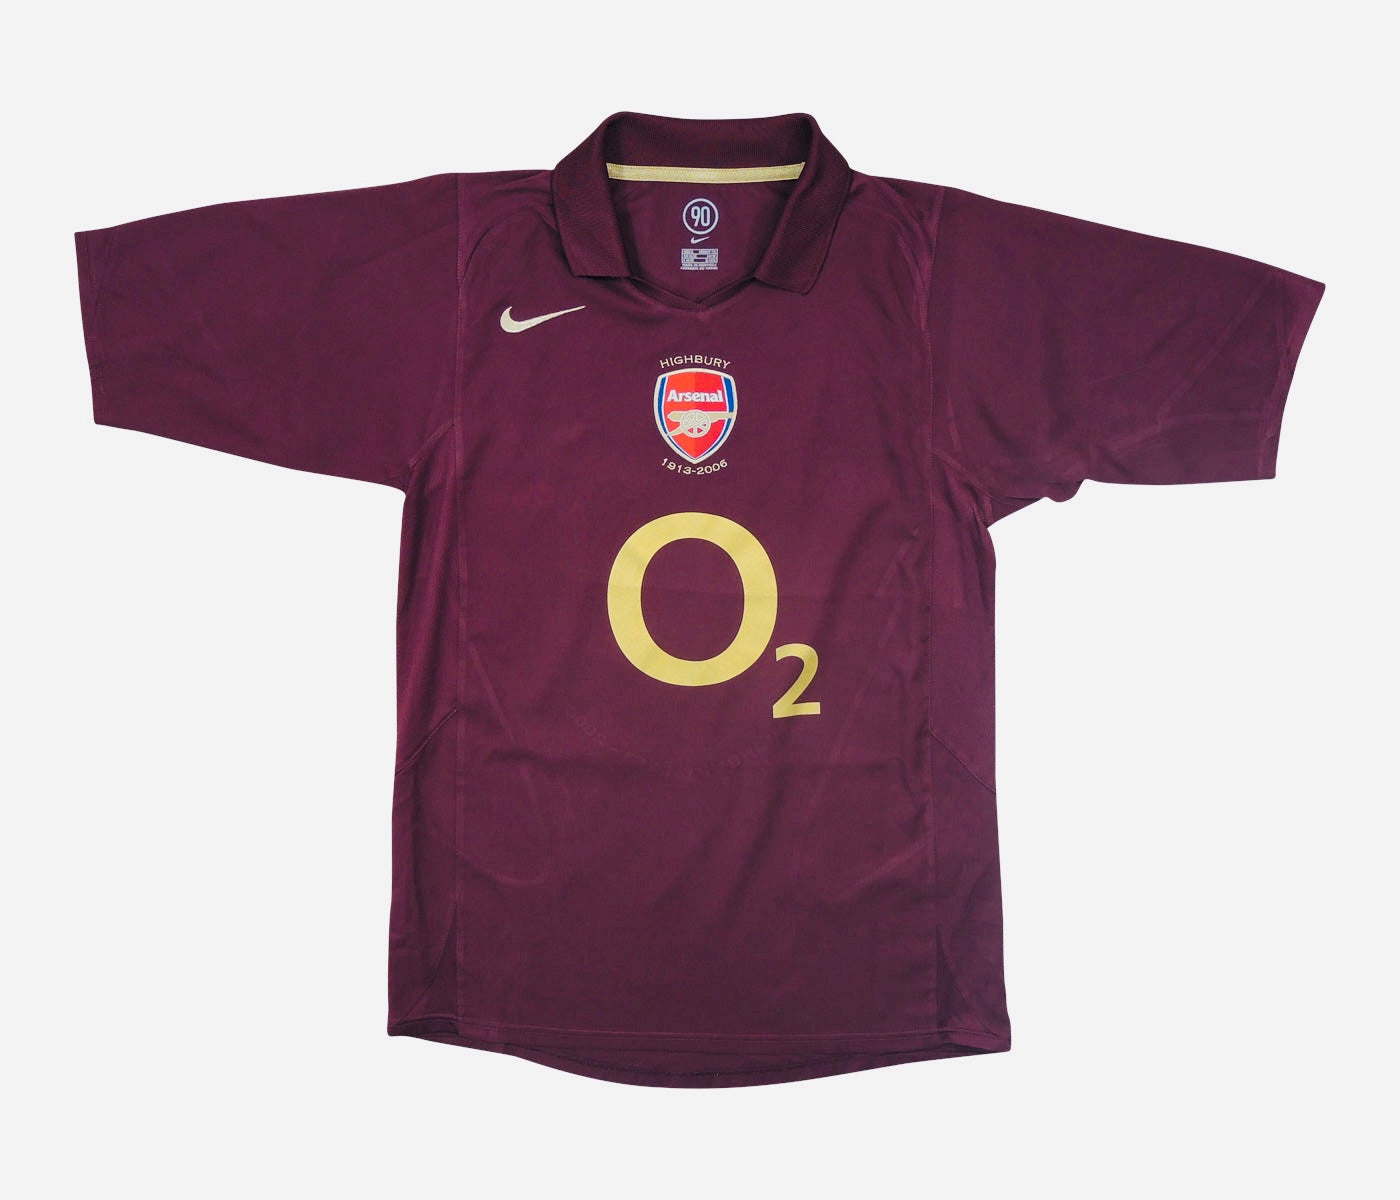 Arsenal 2005/06 Henry – Mystryshirt